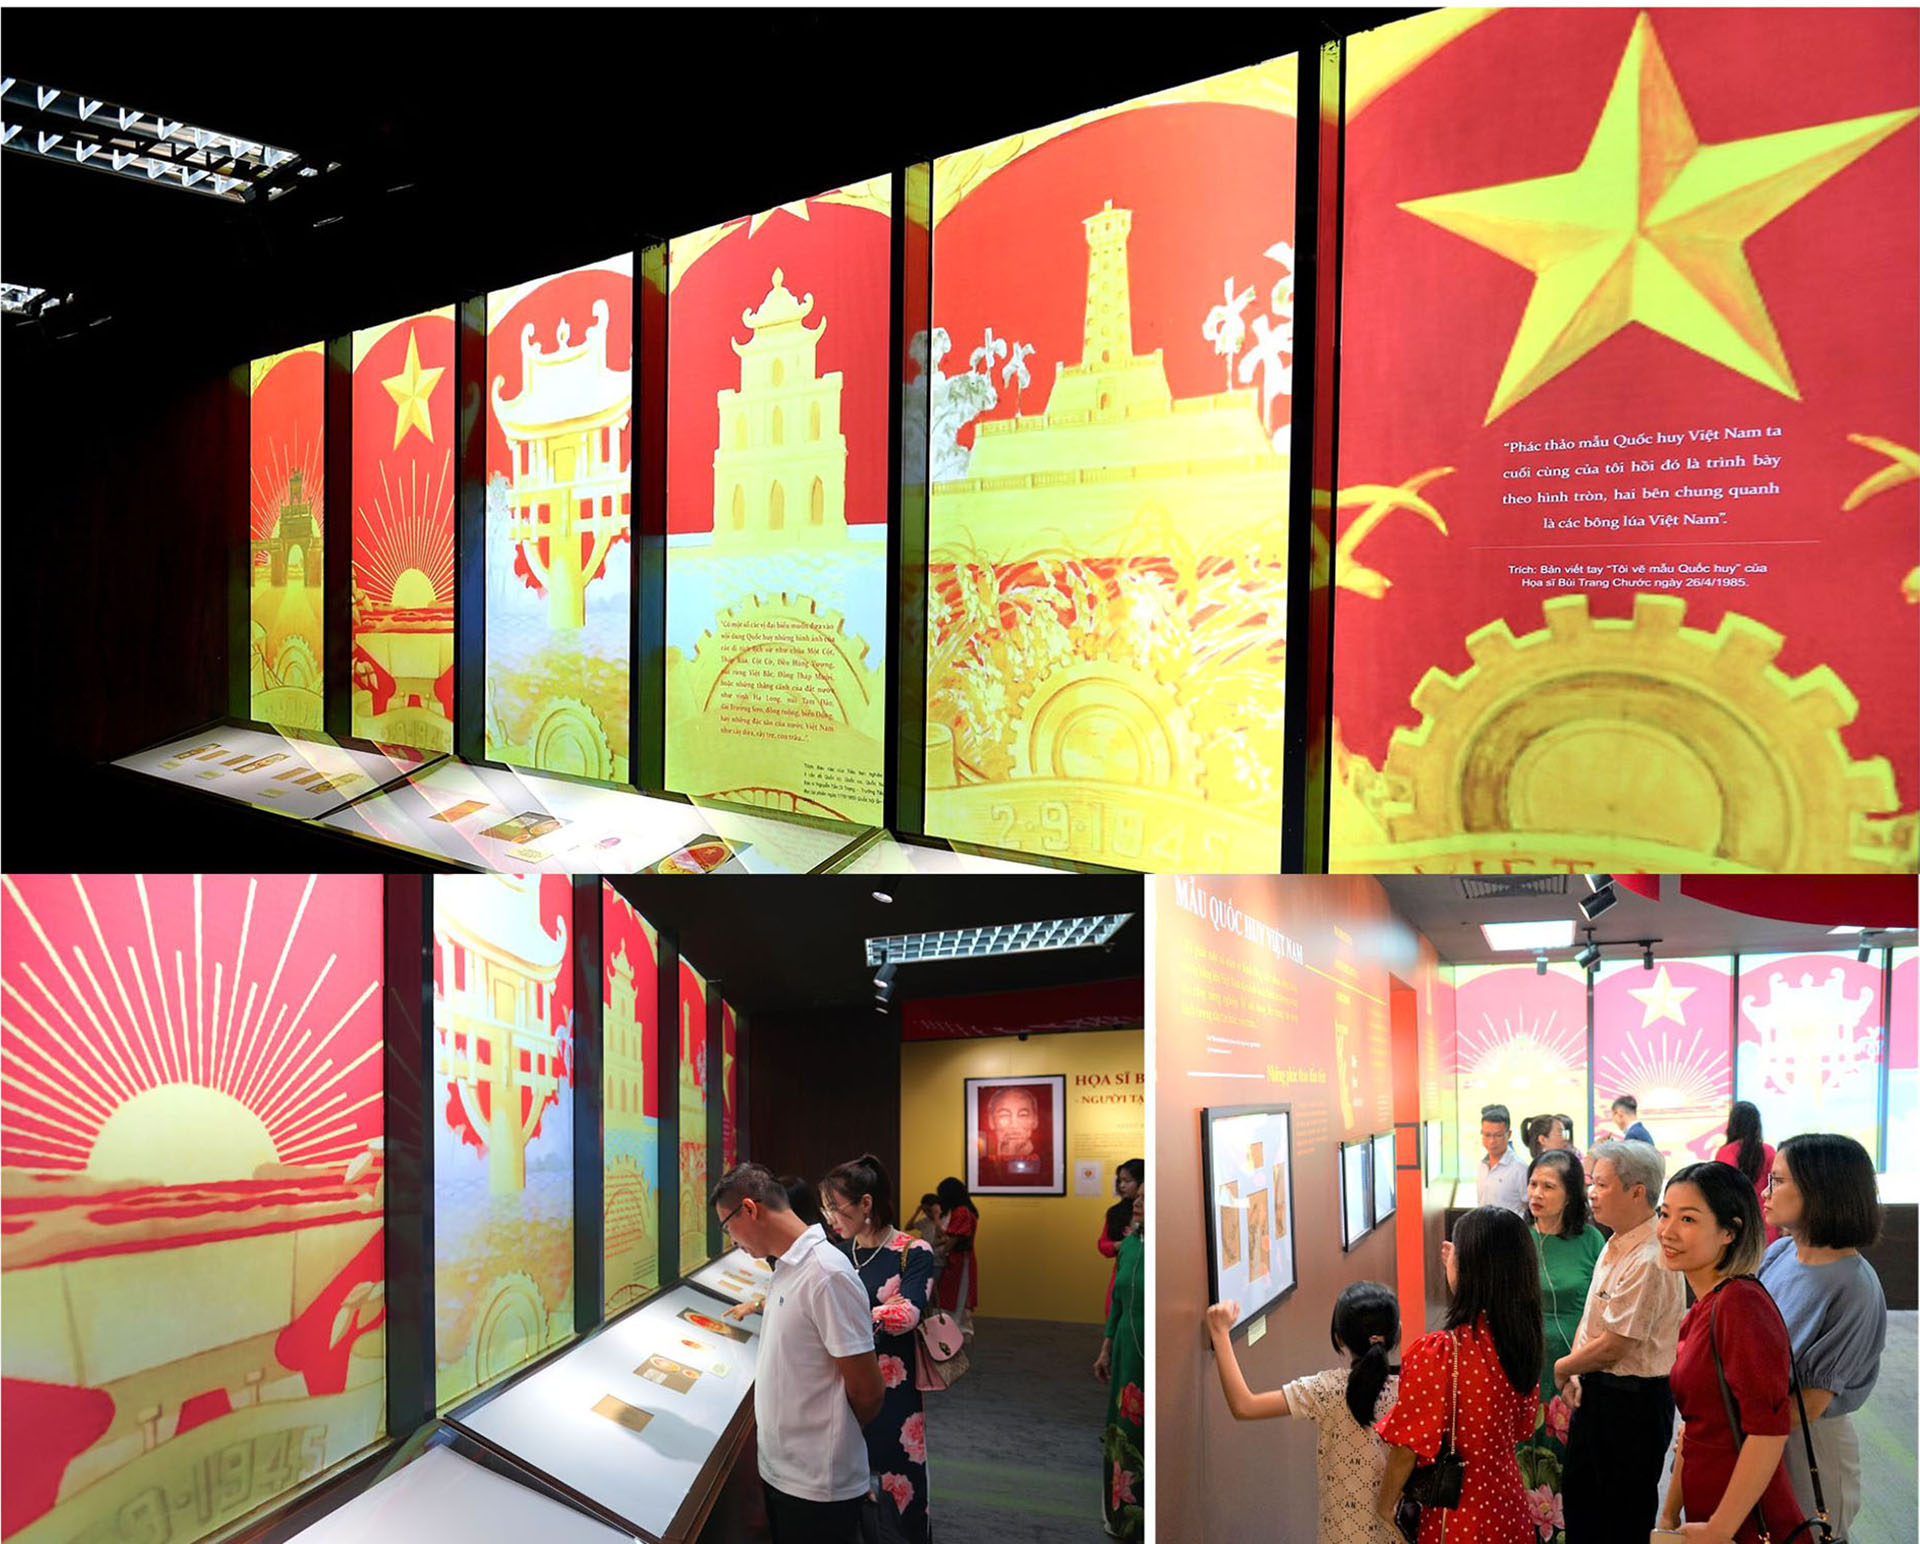 Quốc huy Việt Nam - biểu tượng thiêng liêng, tự hào